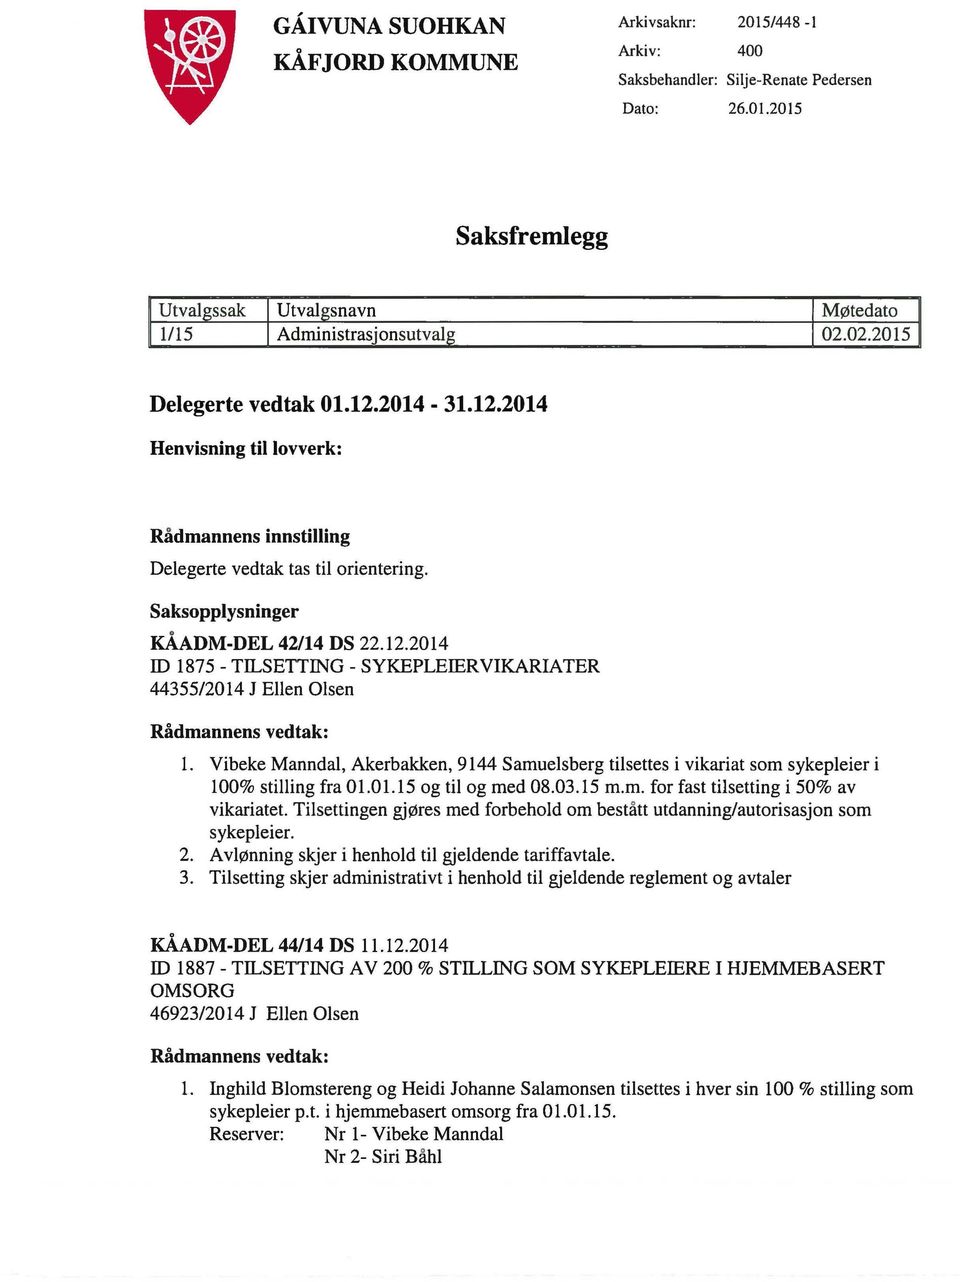 Vibeke Manndal, Akerbakken, 9144 Samuelsberg tilsettes i vikariat som sykepleier i 100% stilling fra 01.01.15 og til og med 08.03.15 m.m. for fast tilsetting i 50% av vikariatet.